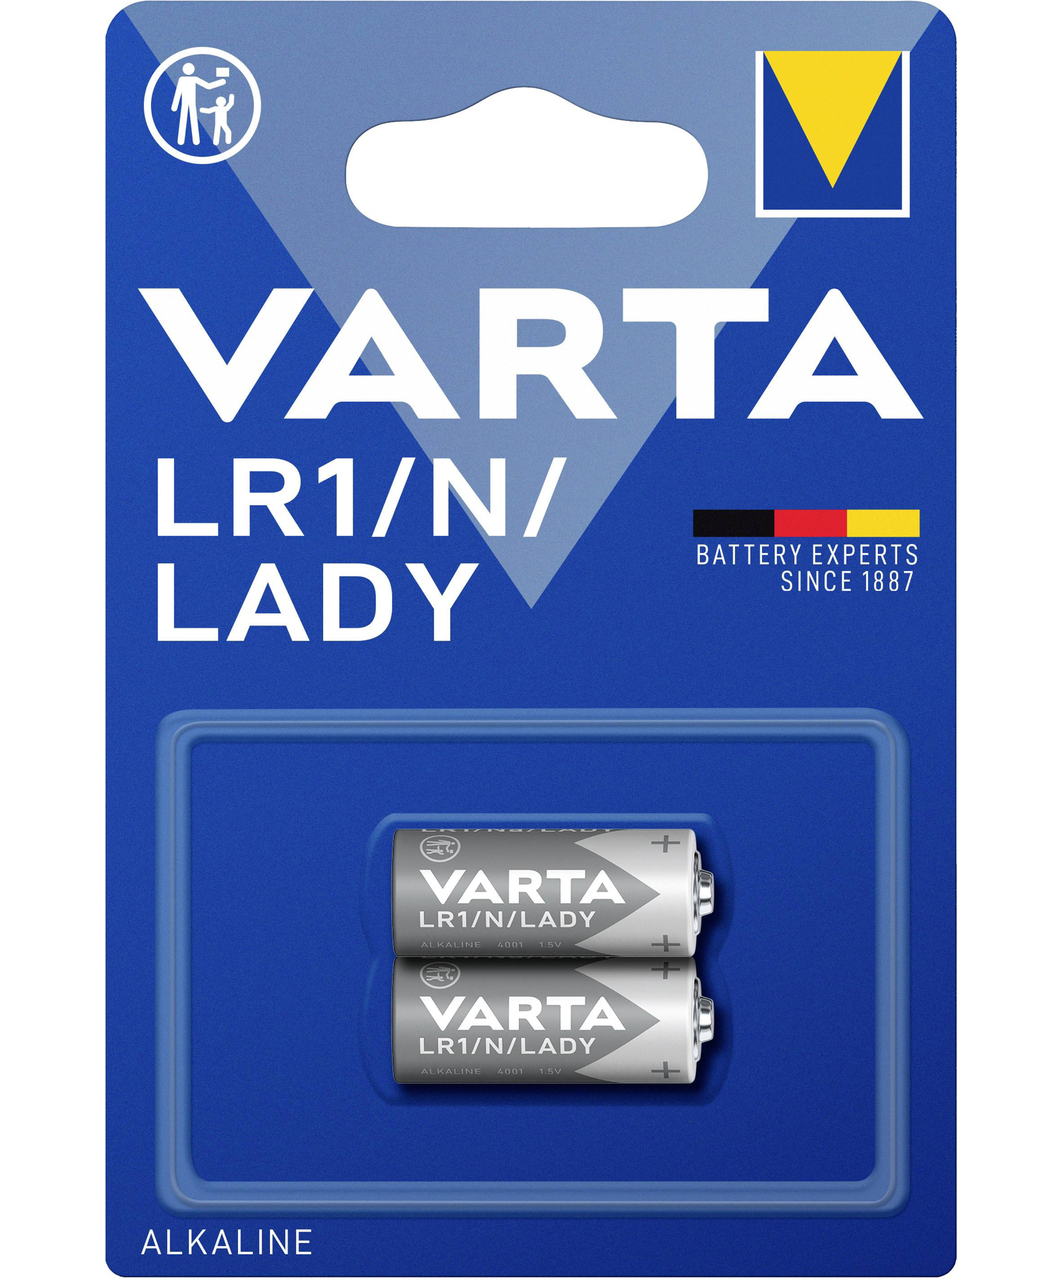 VARTA батарейки LR1/N (2 шт.)